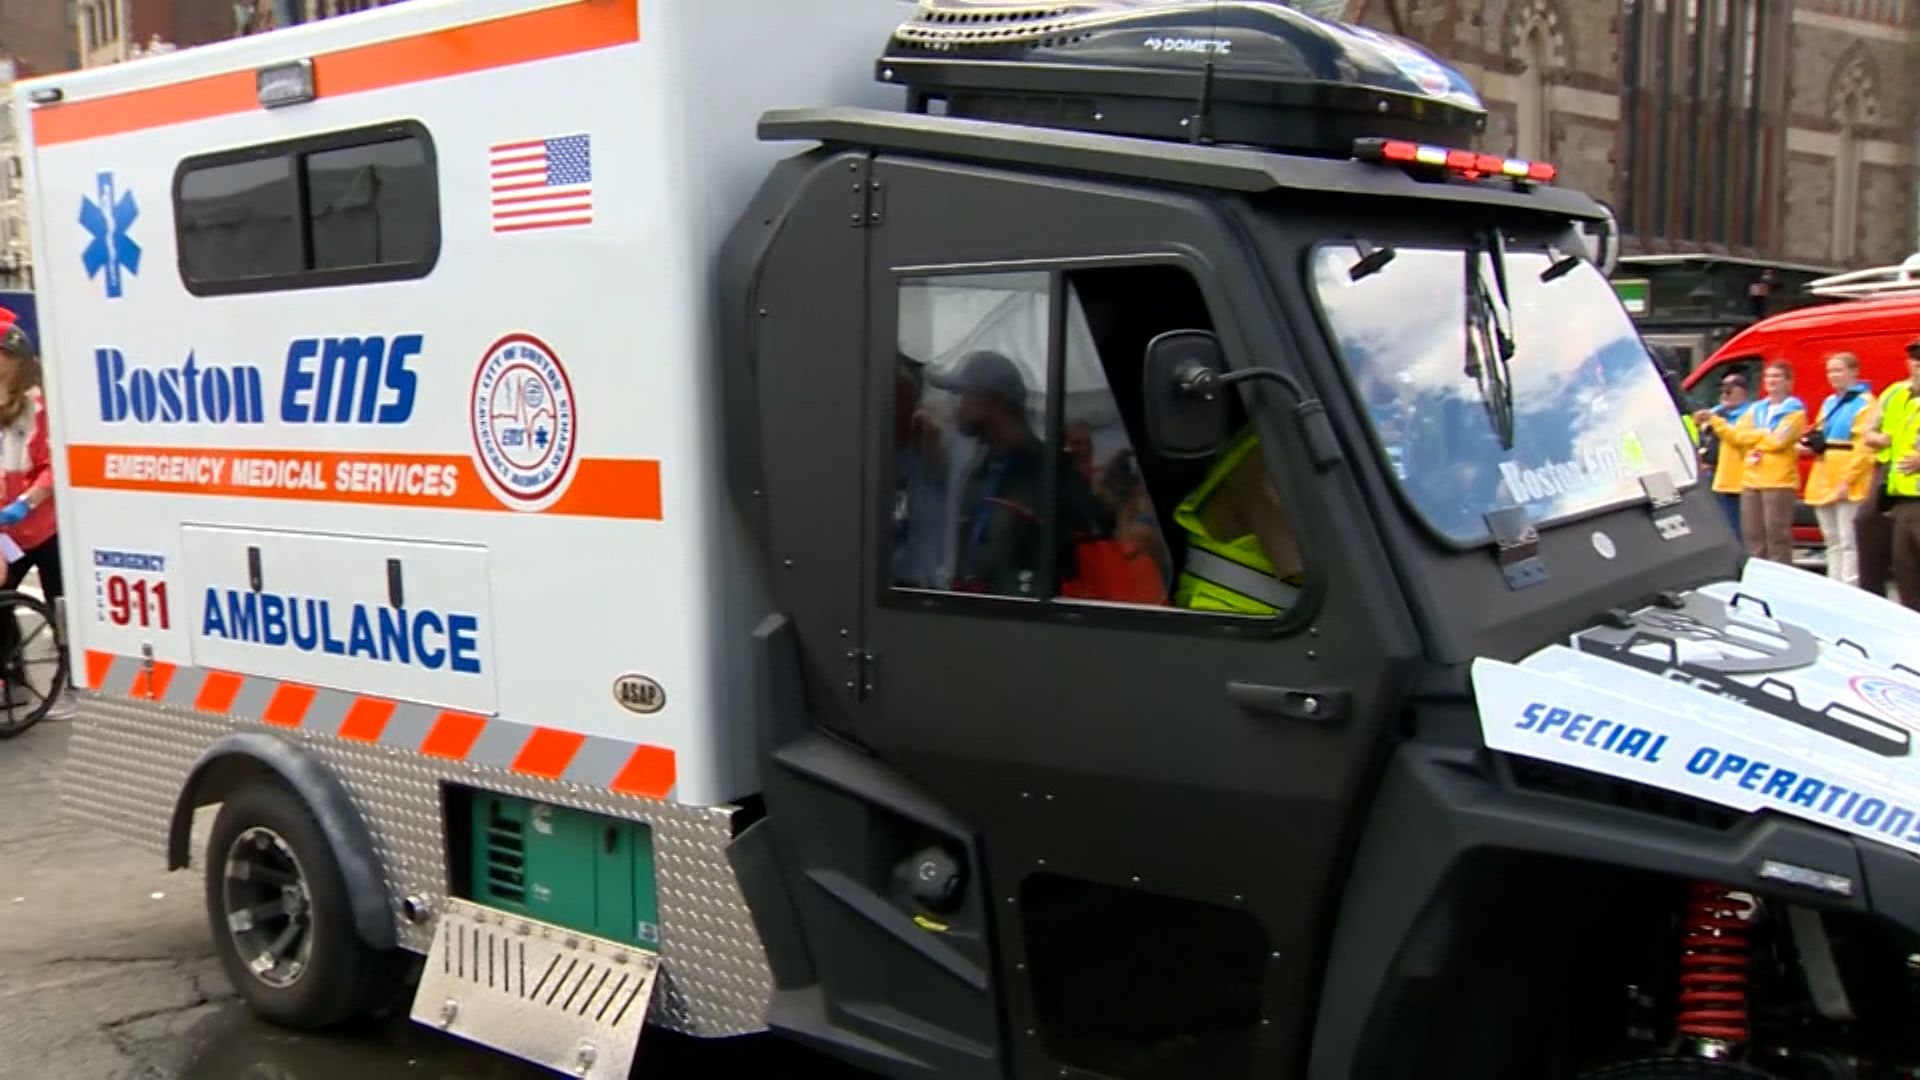 31 race-related ambulance transports during Boston Marathon, EMS says